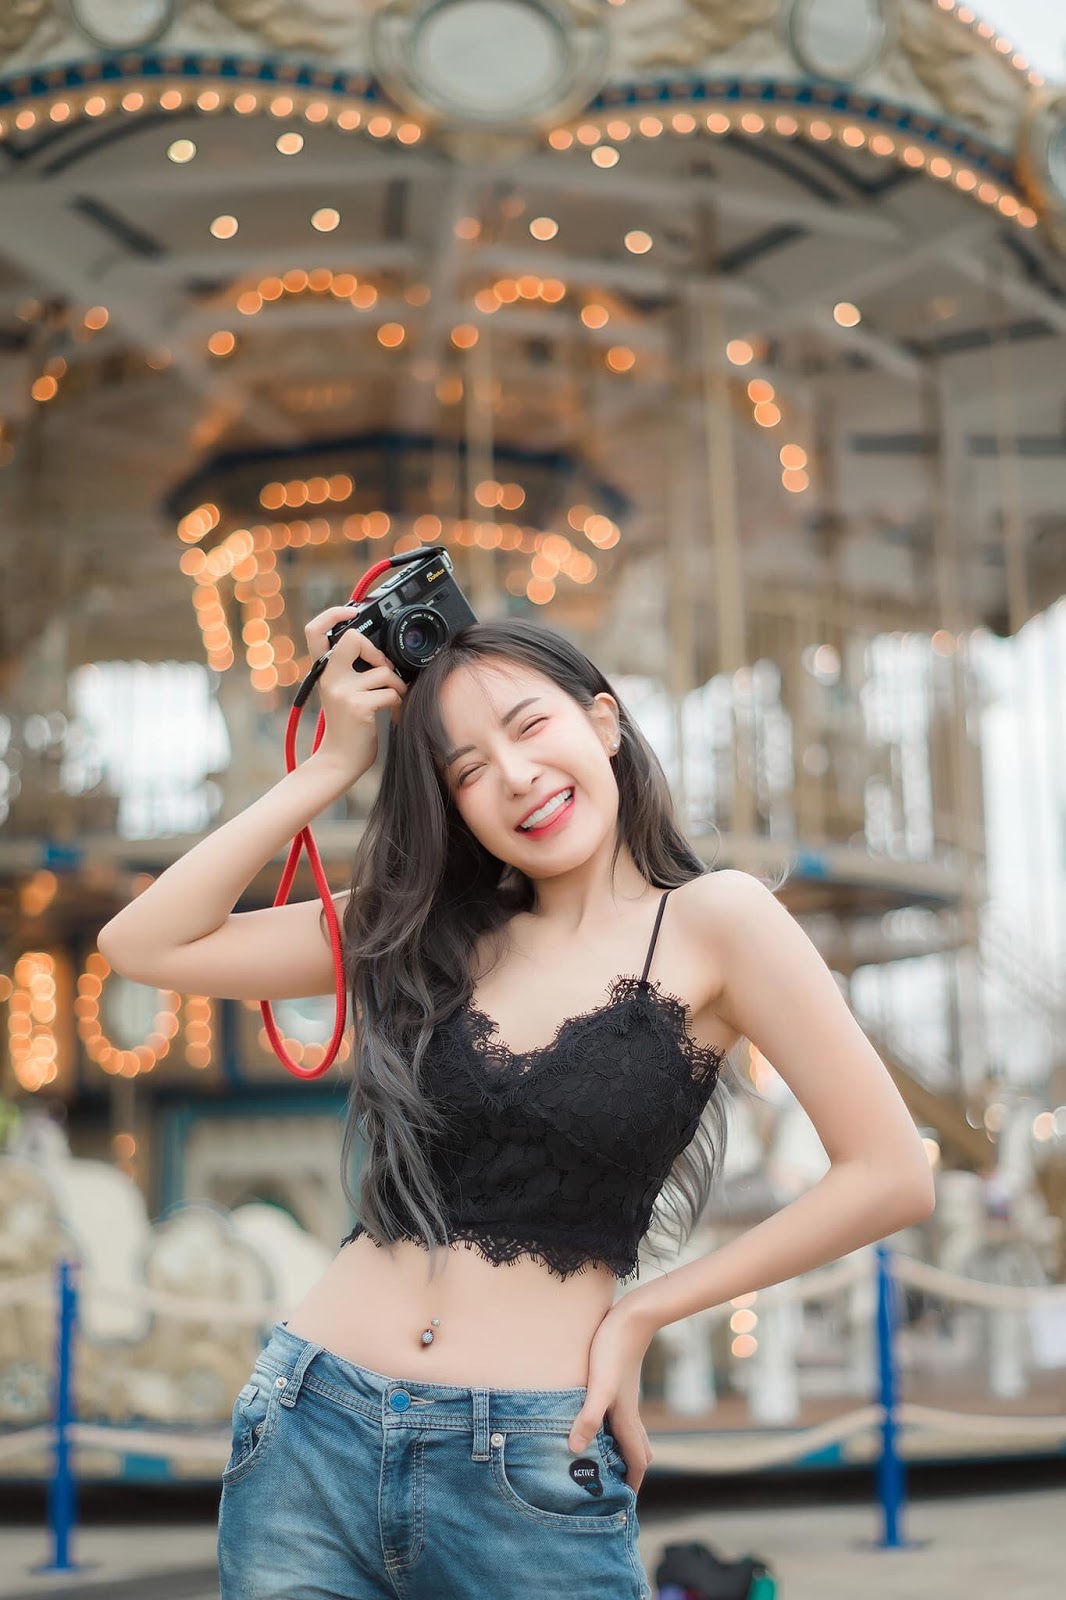 Thailand Hot Girl - Thanyarat Charoenpornkittada - My Memory Childhood Park - TruePic.net - Picture 15